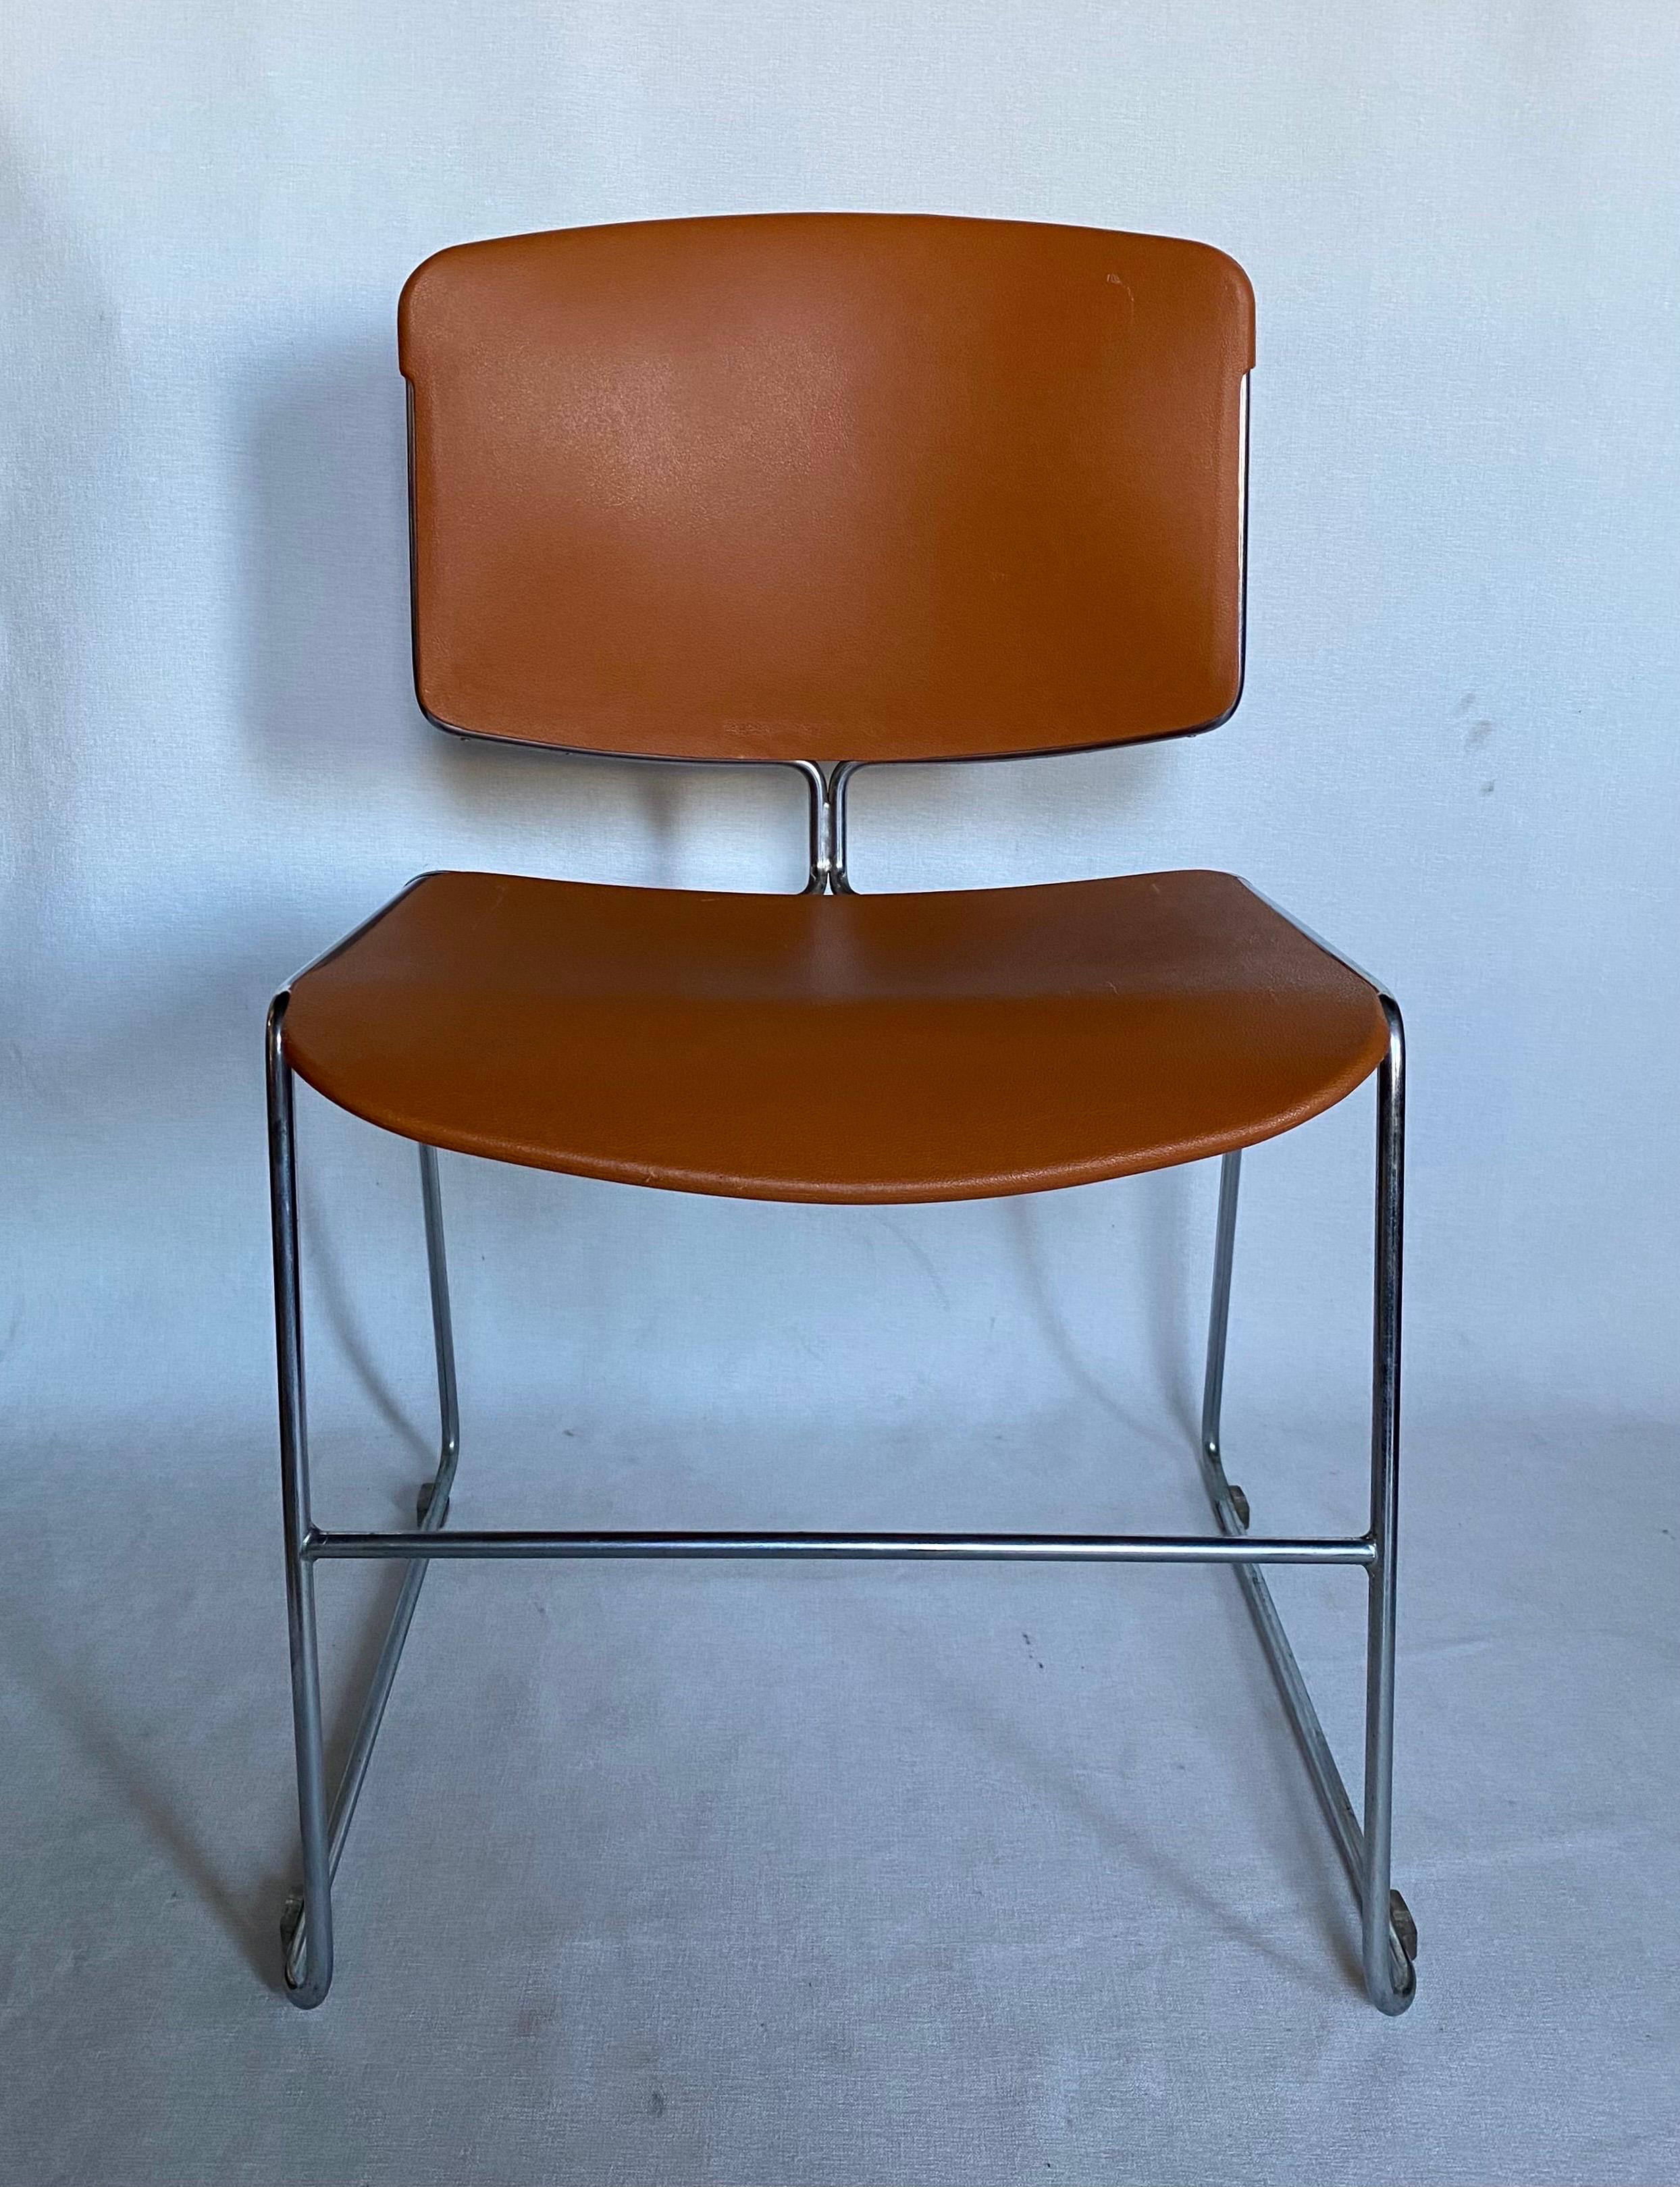 Die modernen Max-Stacker-Bürostühle von Steelcase für Konferenzräume aus der Jahrhundertmitte in kultigem Orange. Diese bequemen Lounge- oder Schreibtischstühle verfügen über geformte, geschwungene Sitzflächen und Rückenlehnen mit polierten